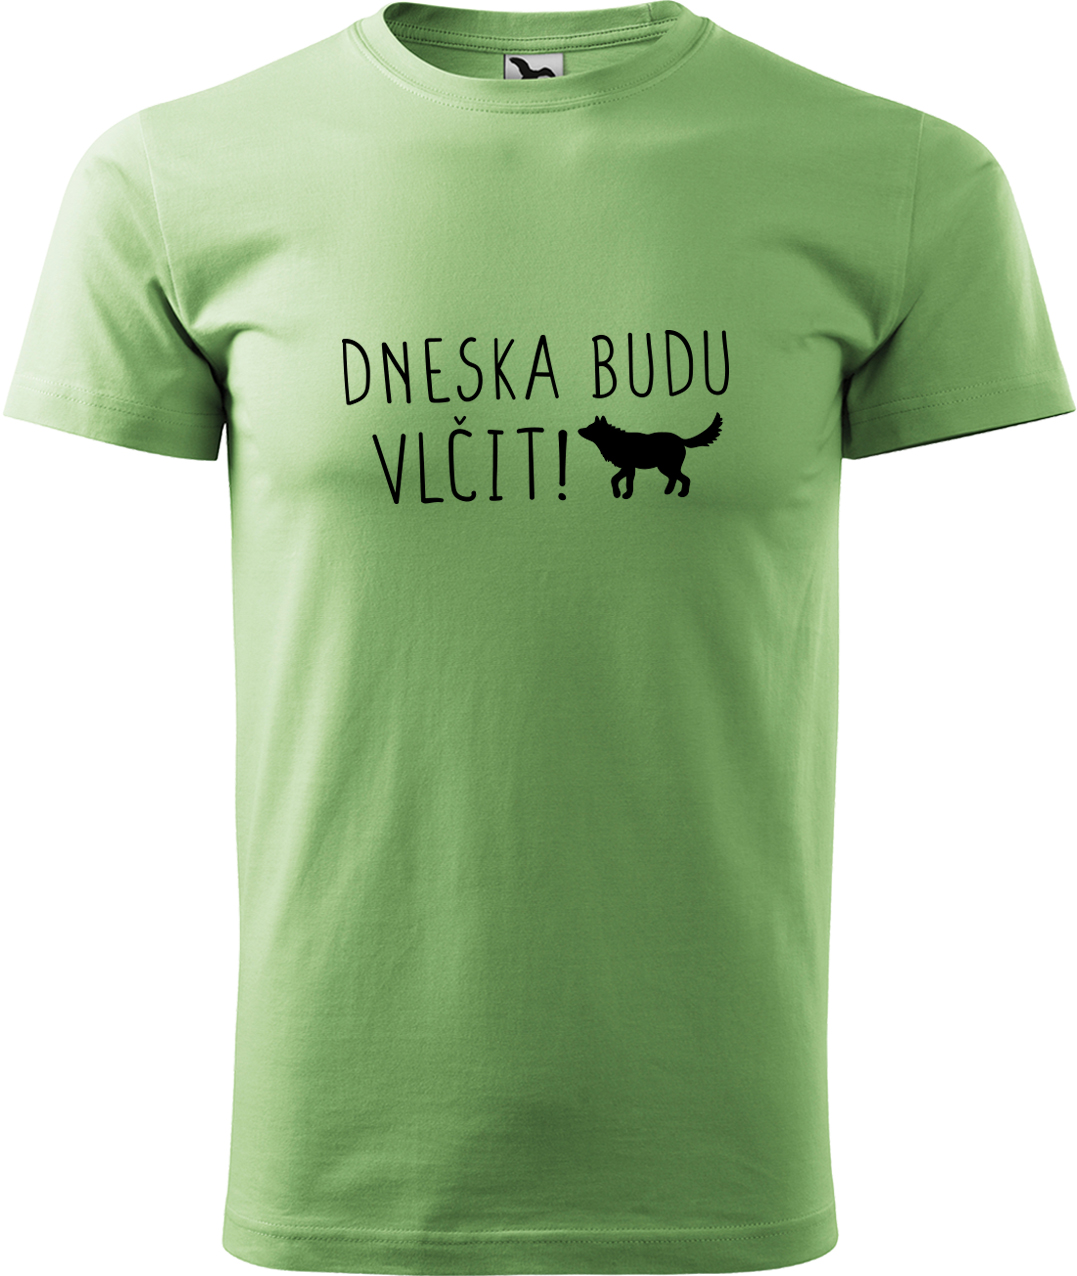 Pánské tričko s vlkem - Dneska budu vlčit! Velikost: 3XL, Barva: Trávově zelená (39), Střih: pánský